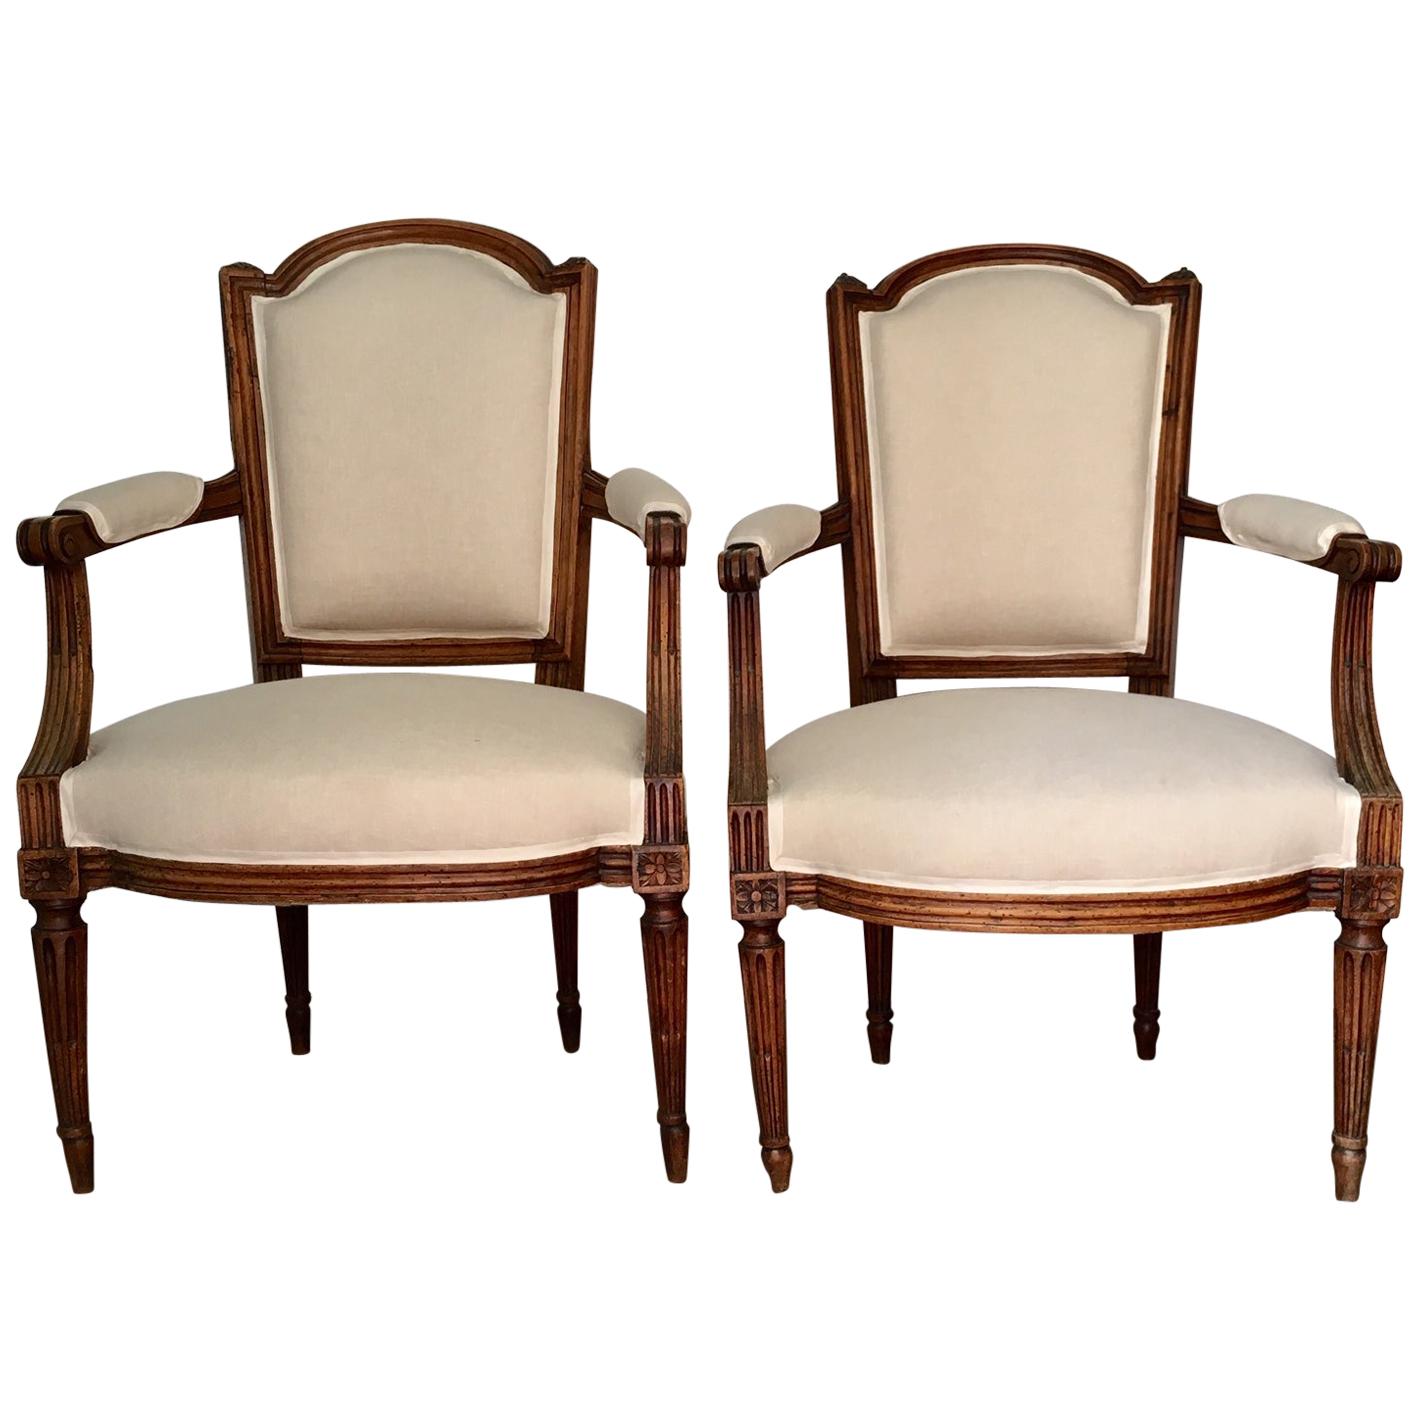 Paire de fauteuils Louis XVI du XVIIIe siècle